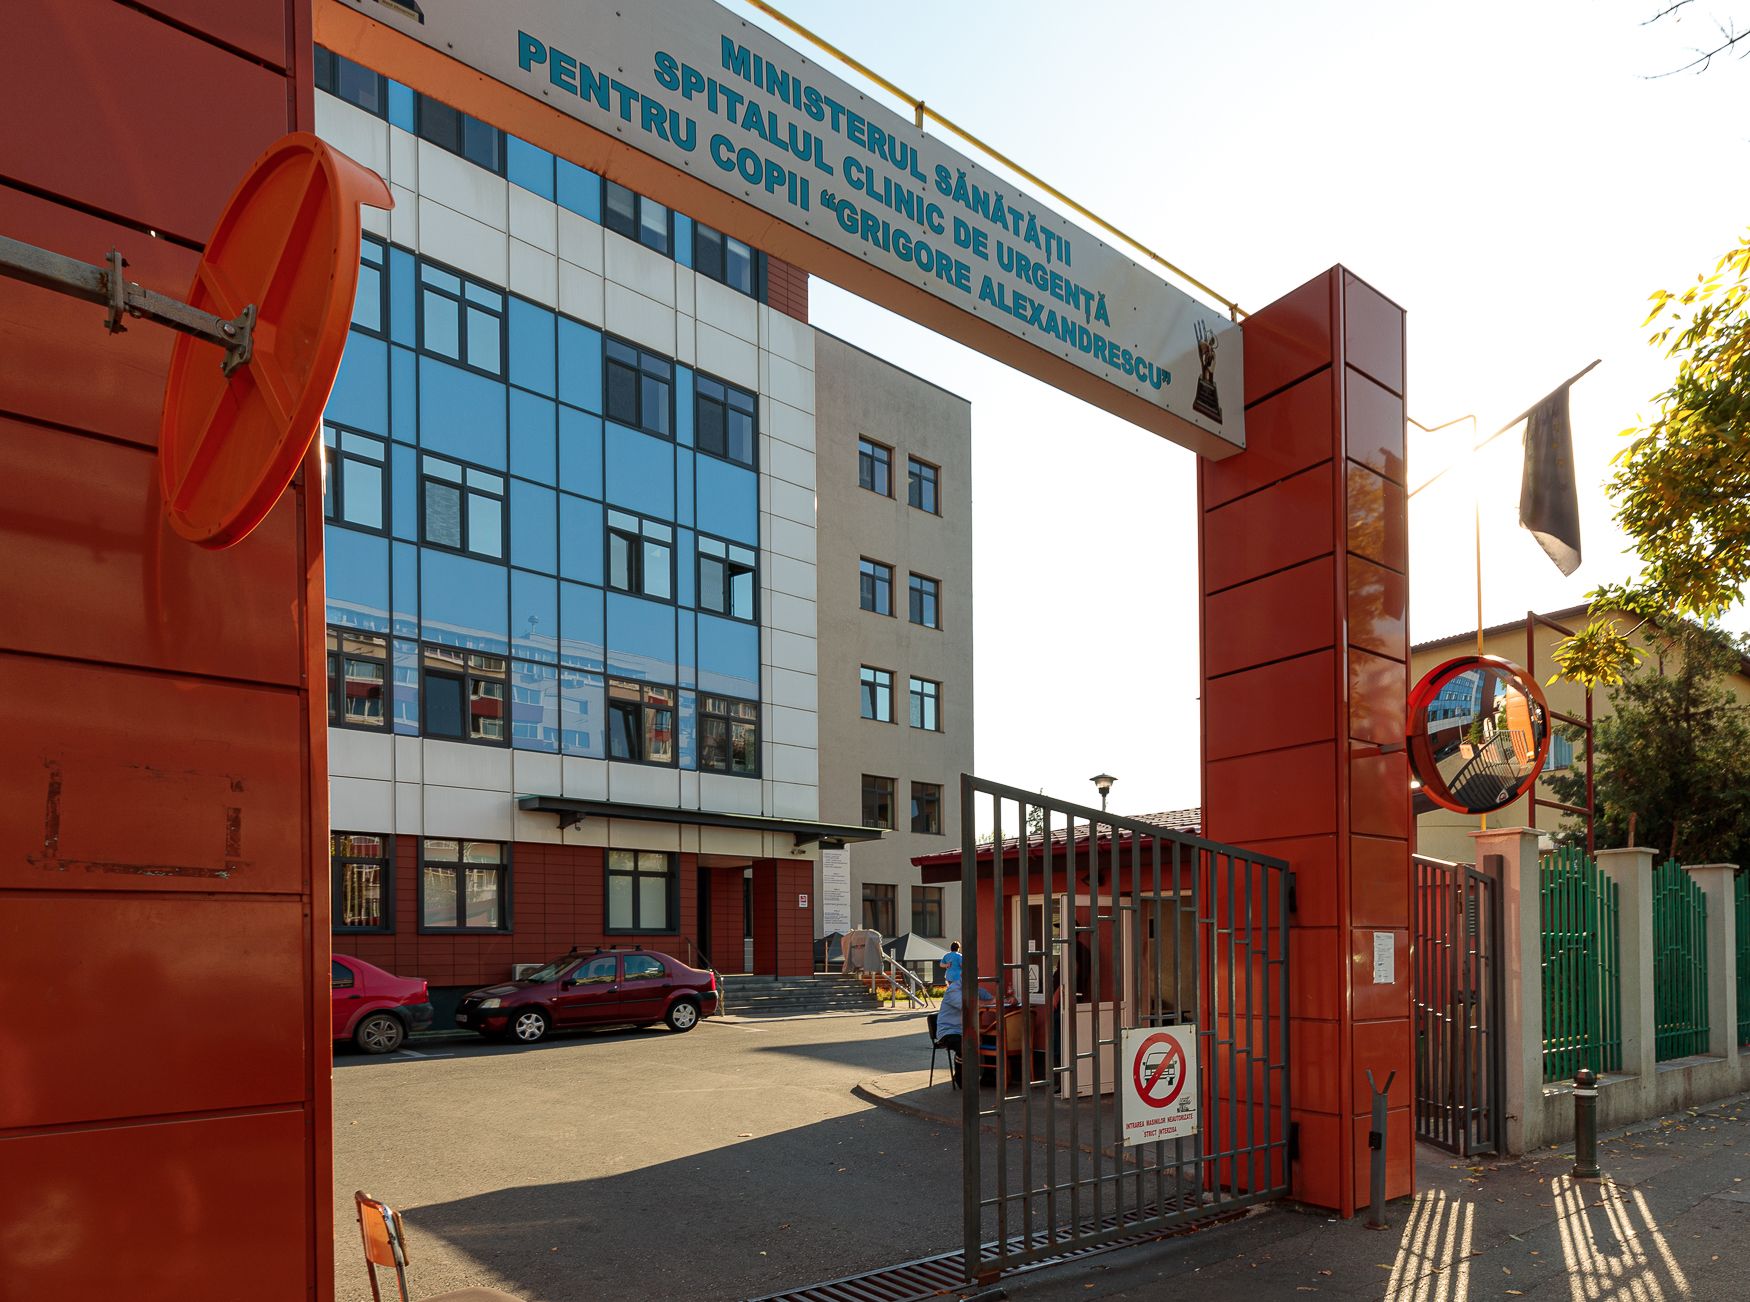 Număr record de copii ajunși la Spitalul Grigore Alexandrescu! Principalele probleme care afectează sănătatea